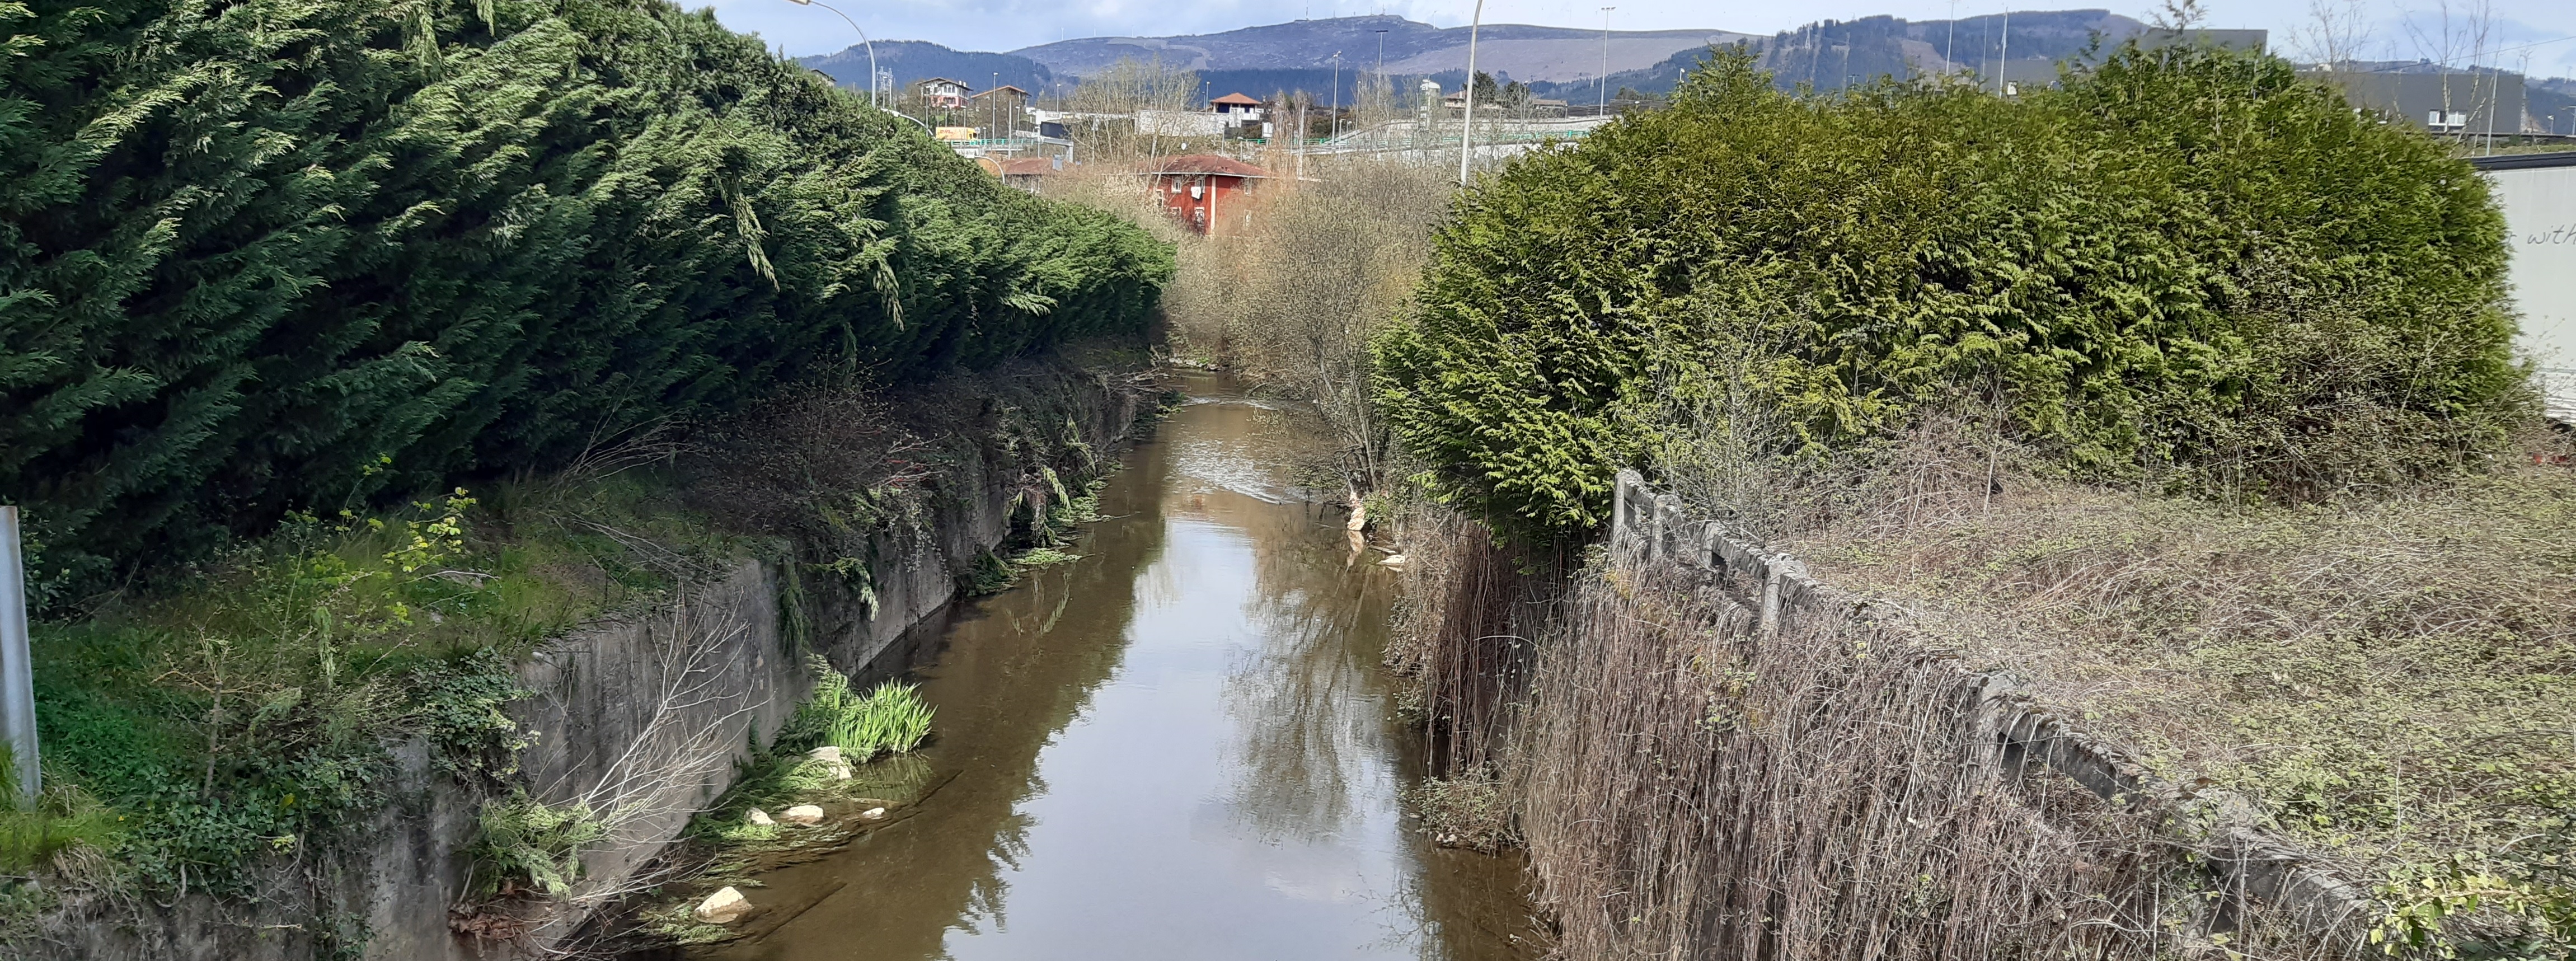 Localización del futuro puente de acceso al polígono industrial de Trañapadura sobre el río Sarria.